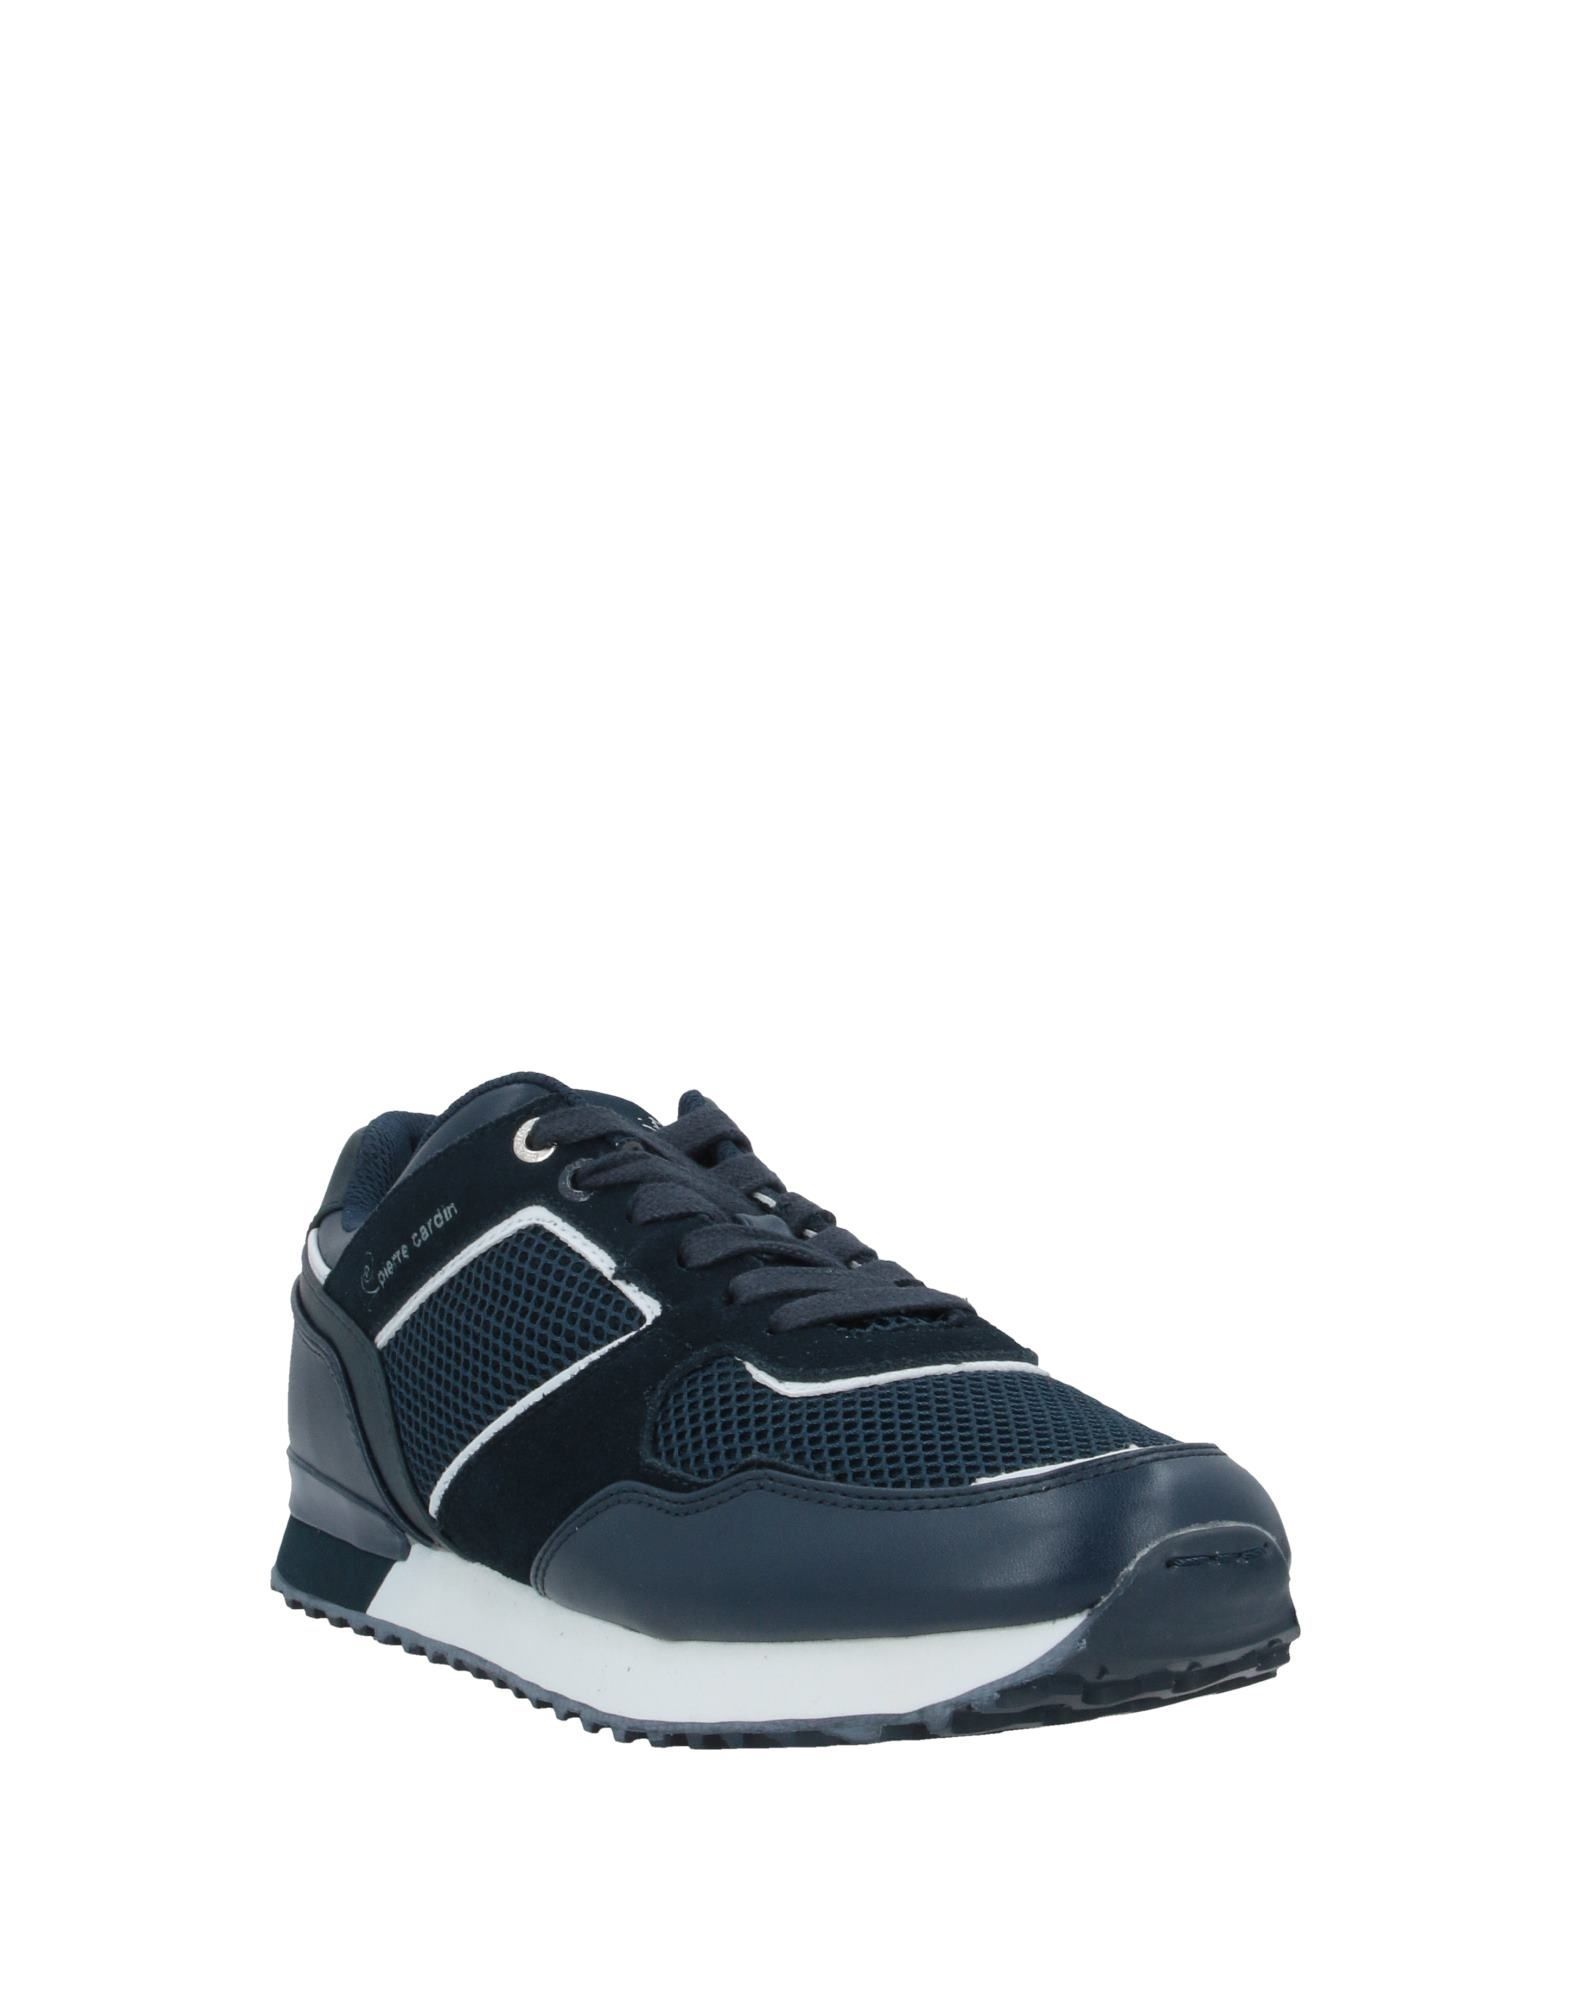 Pierre Cardin Dark Blue Leather Sneakers